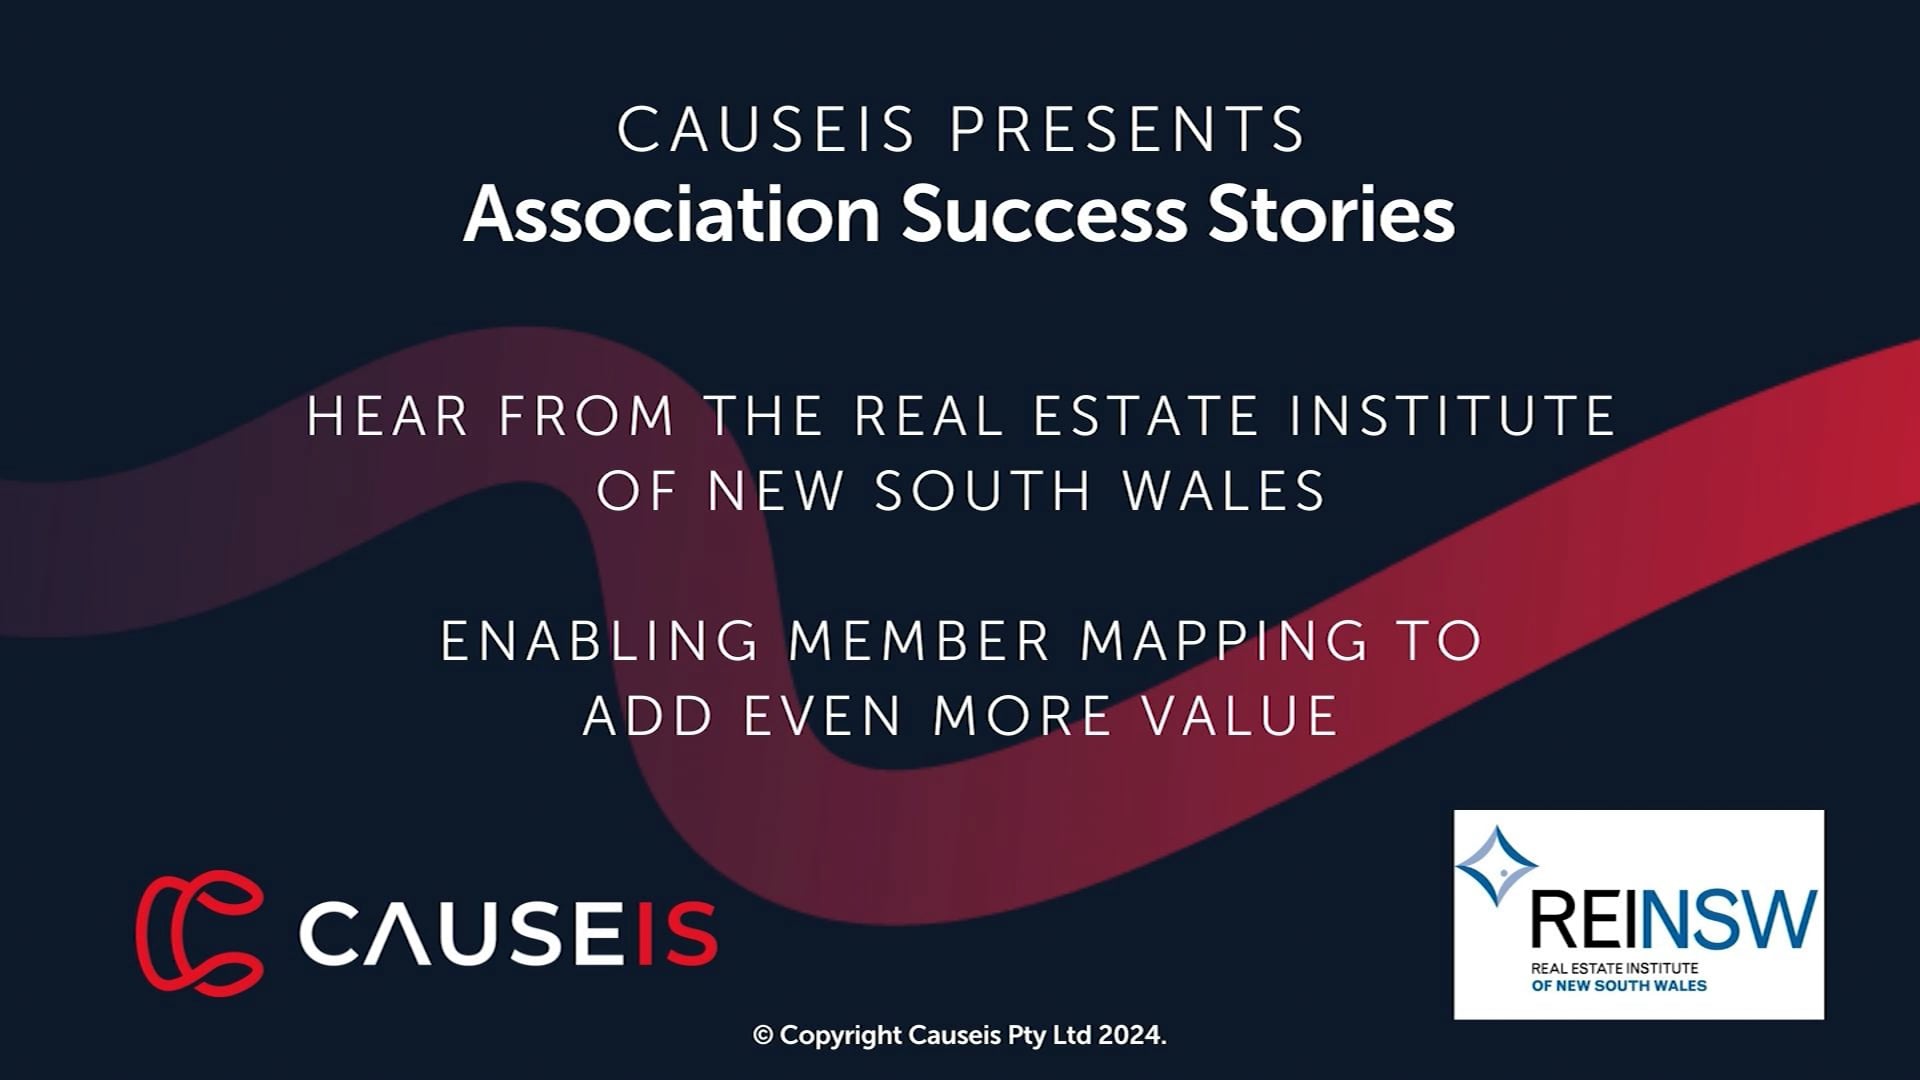 Association Success Stories - REINSW